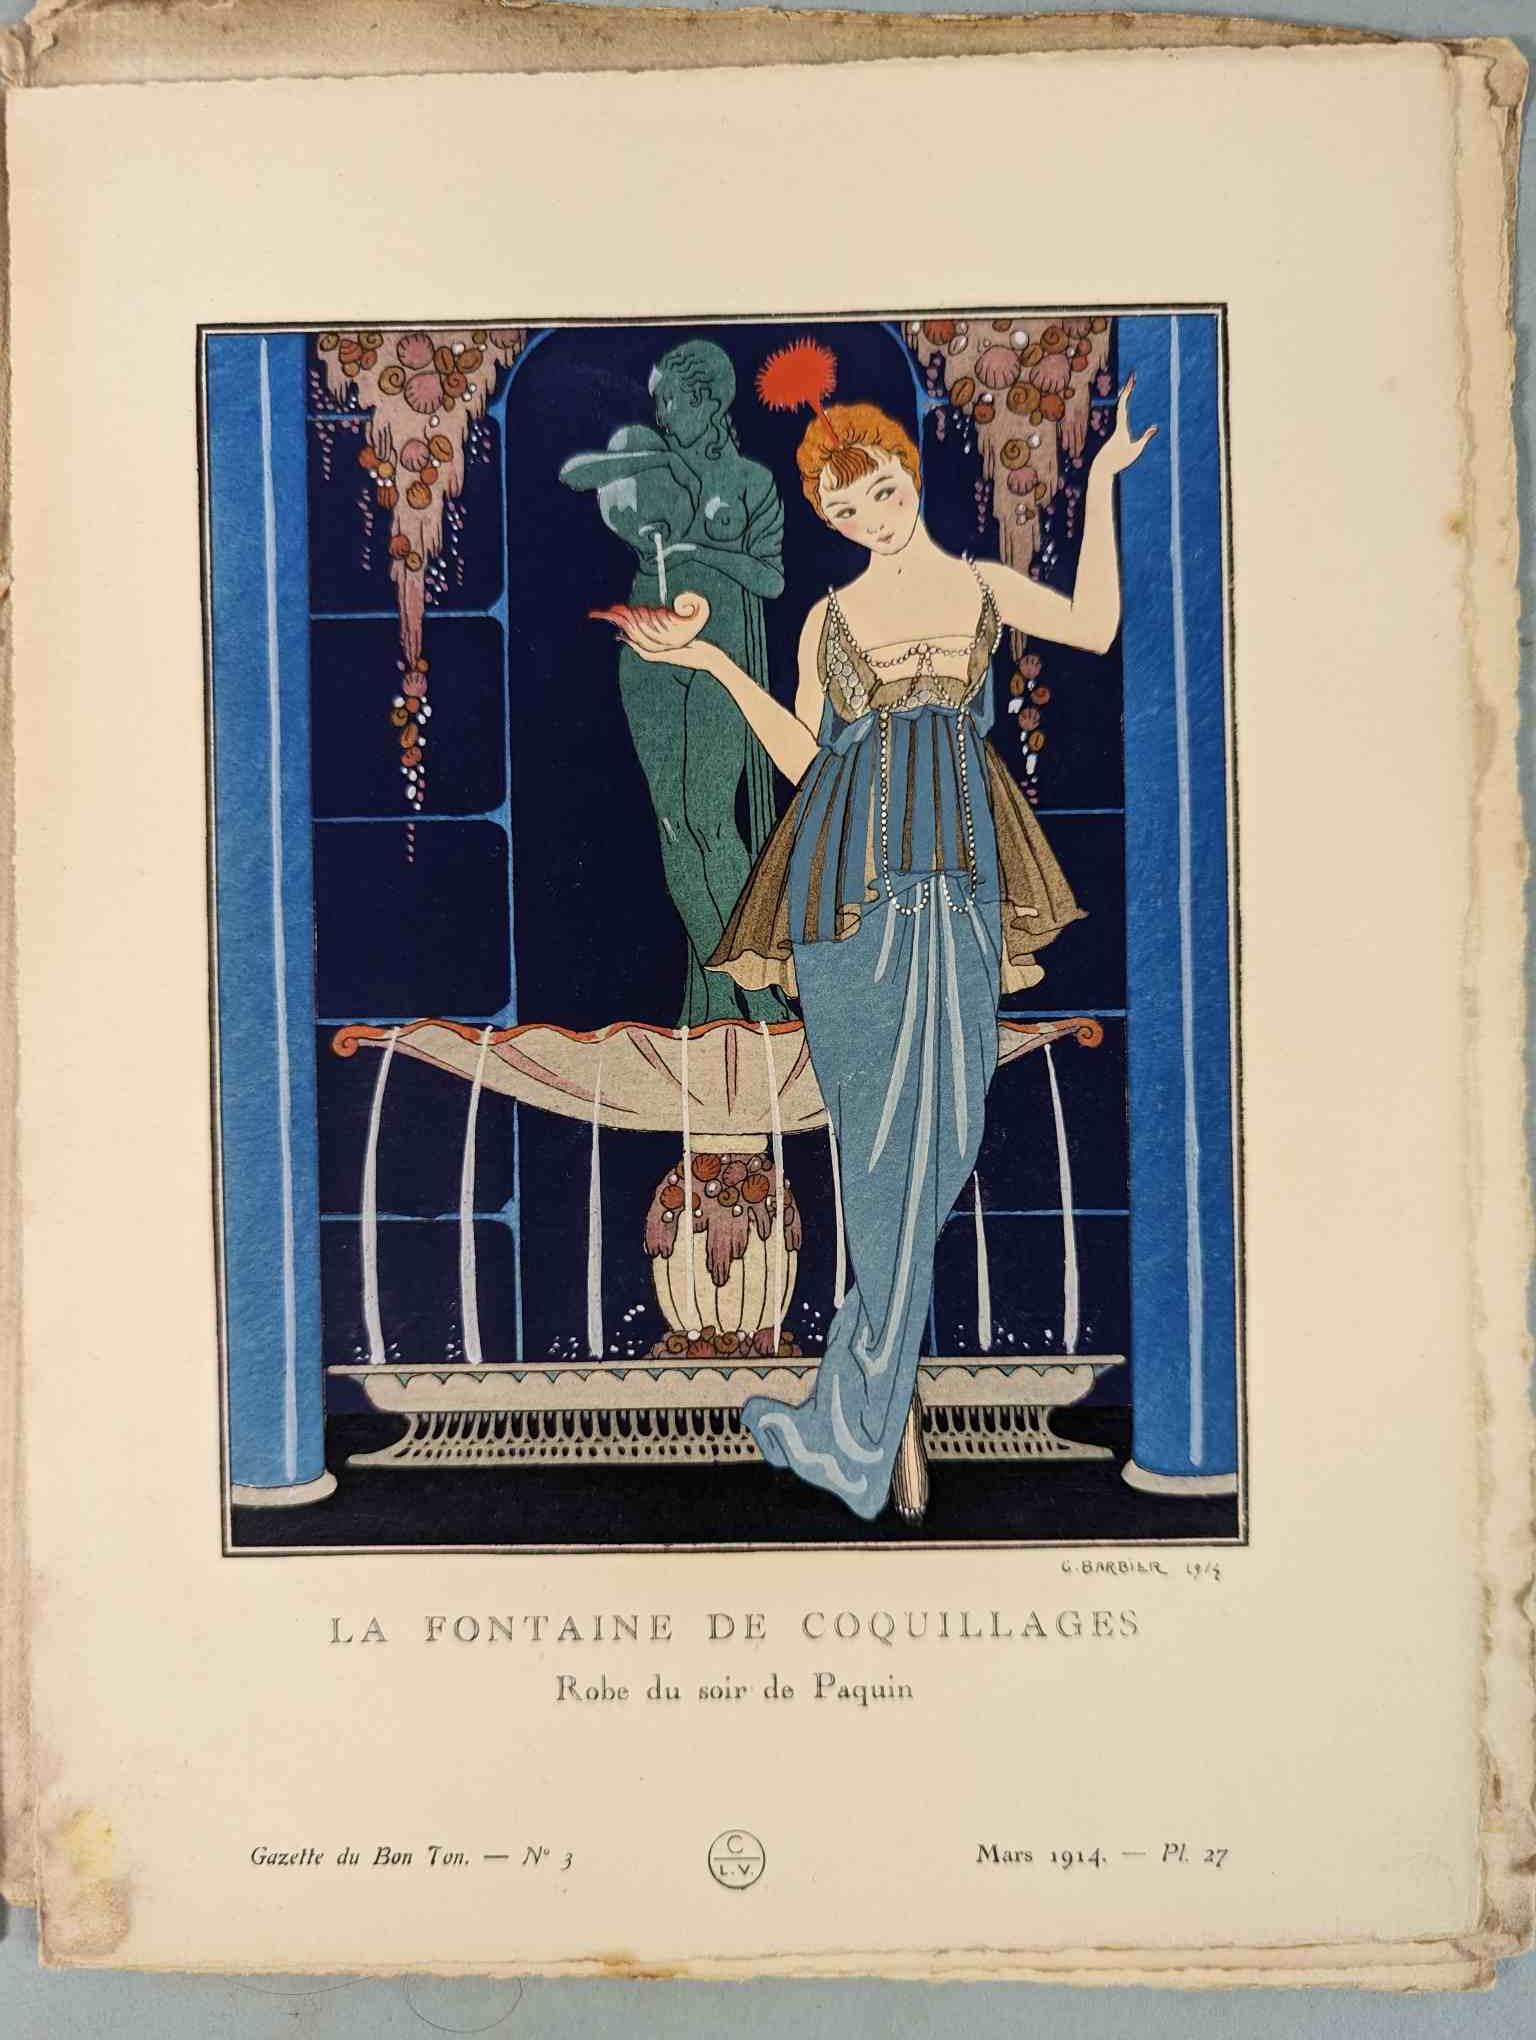 FASHION. VOGEL, Lucien. GAZETTE DU BON TON: Art-Modes & Frivolités, Paris 1913-14, 4 vol. - Image 27 of 54